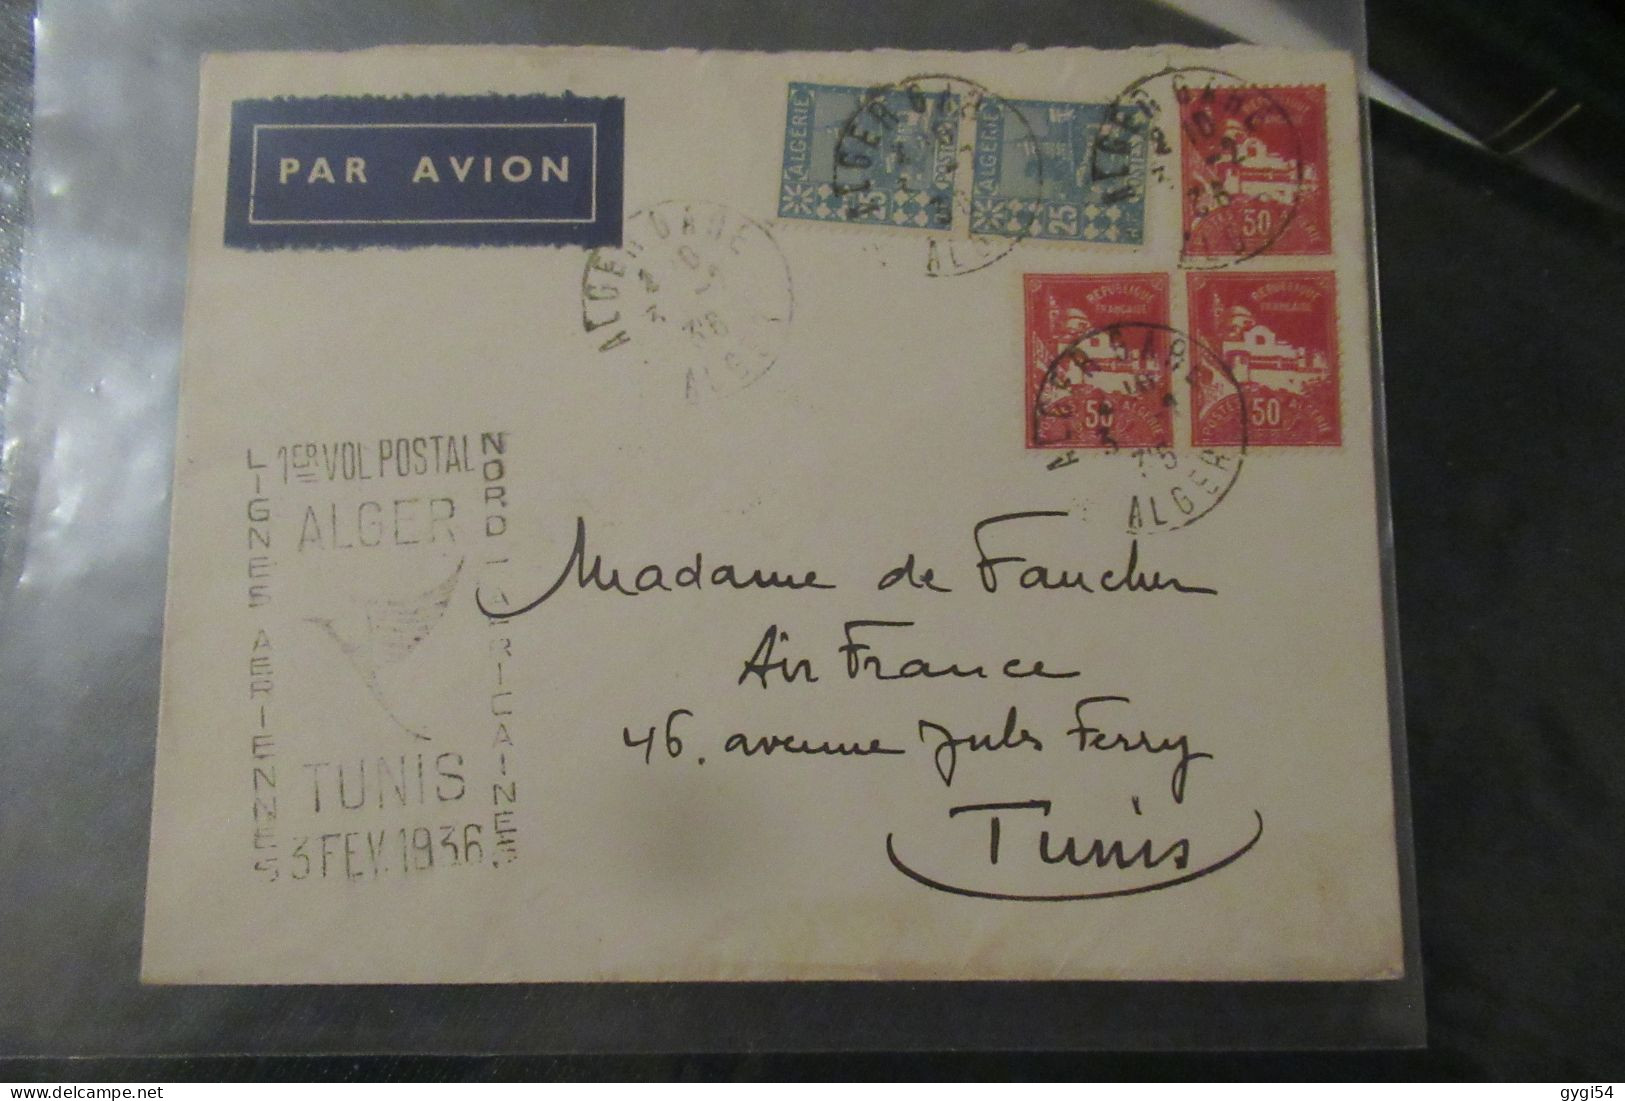 Algérie - 1er Vol Postal ALGER TUNIS 3 Février 1936 - Luftpost